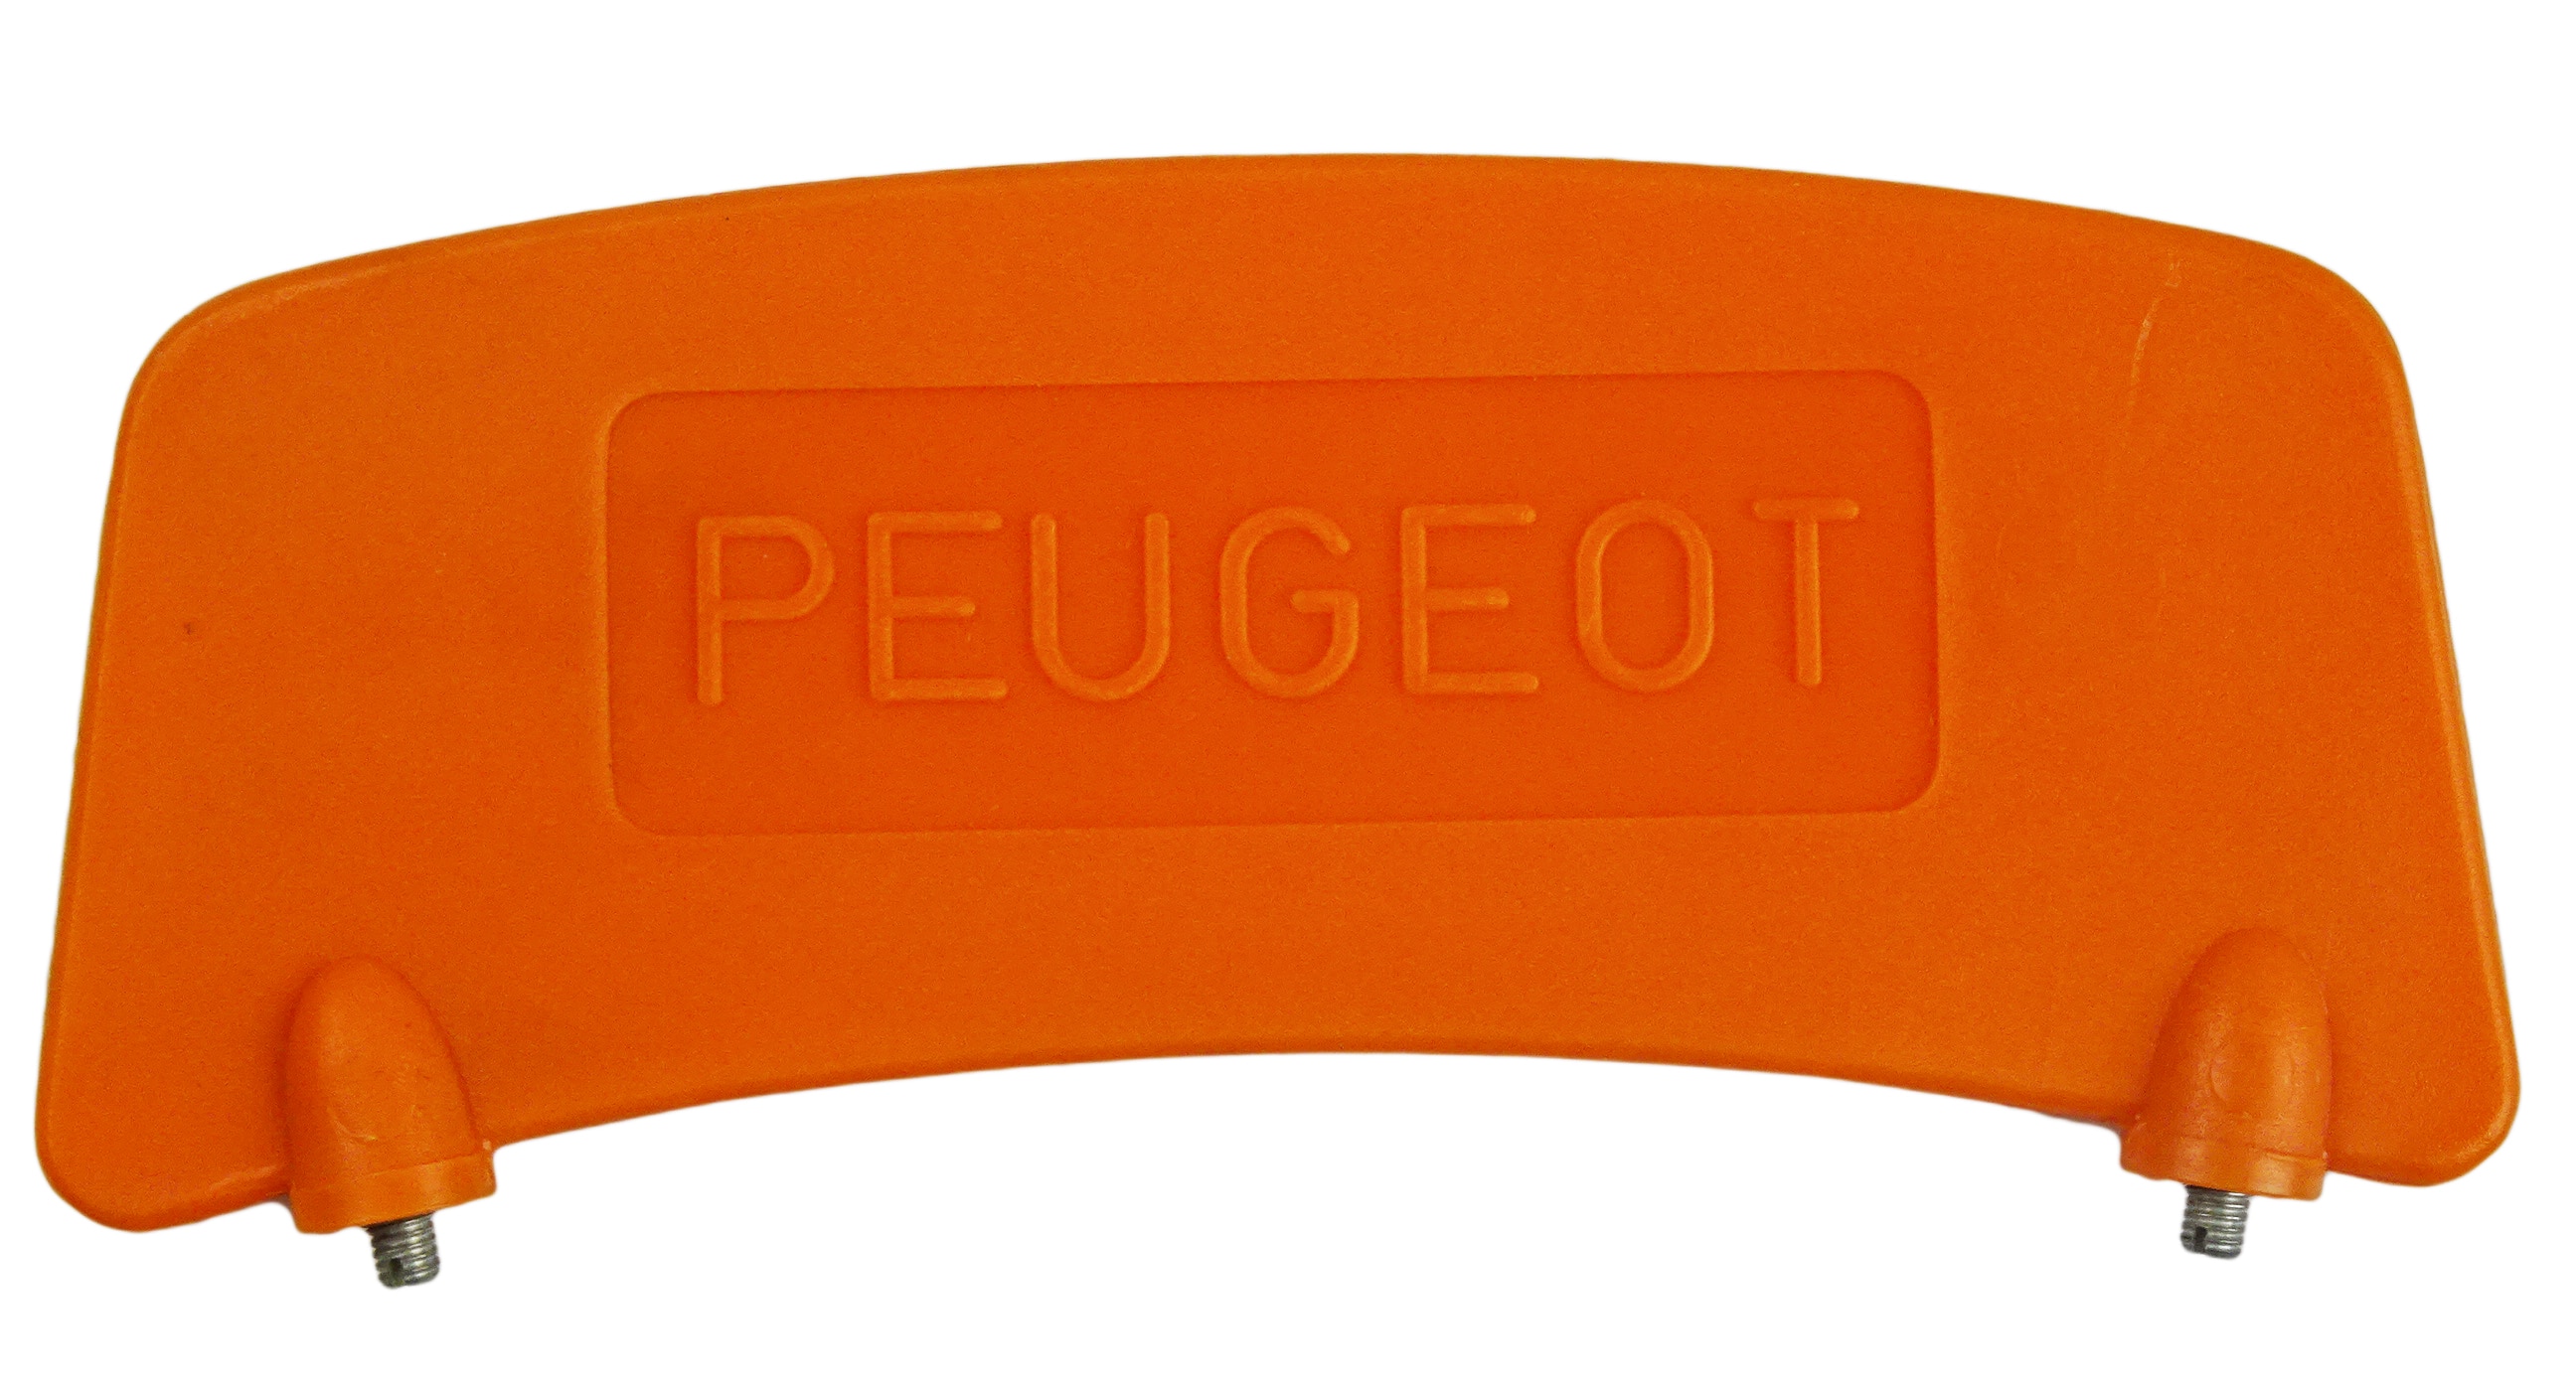 Platta Peugeot Orange